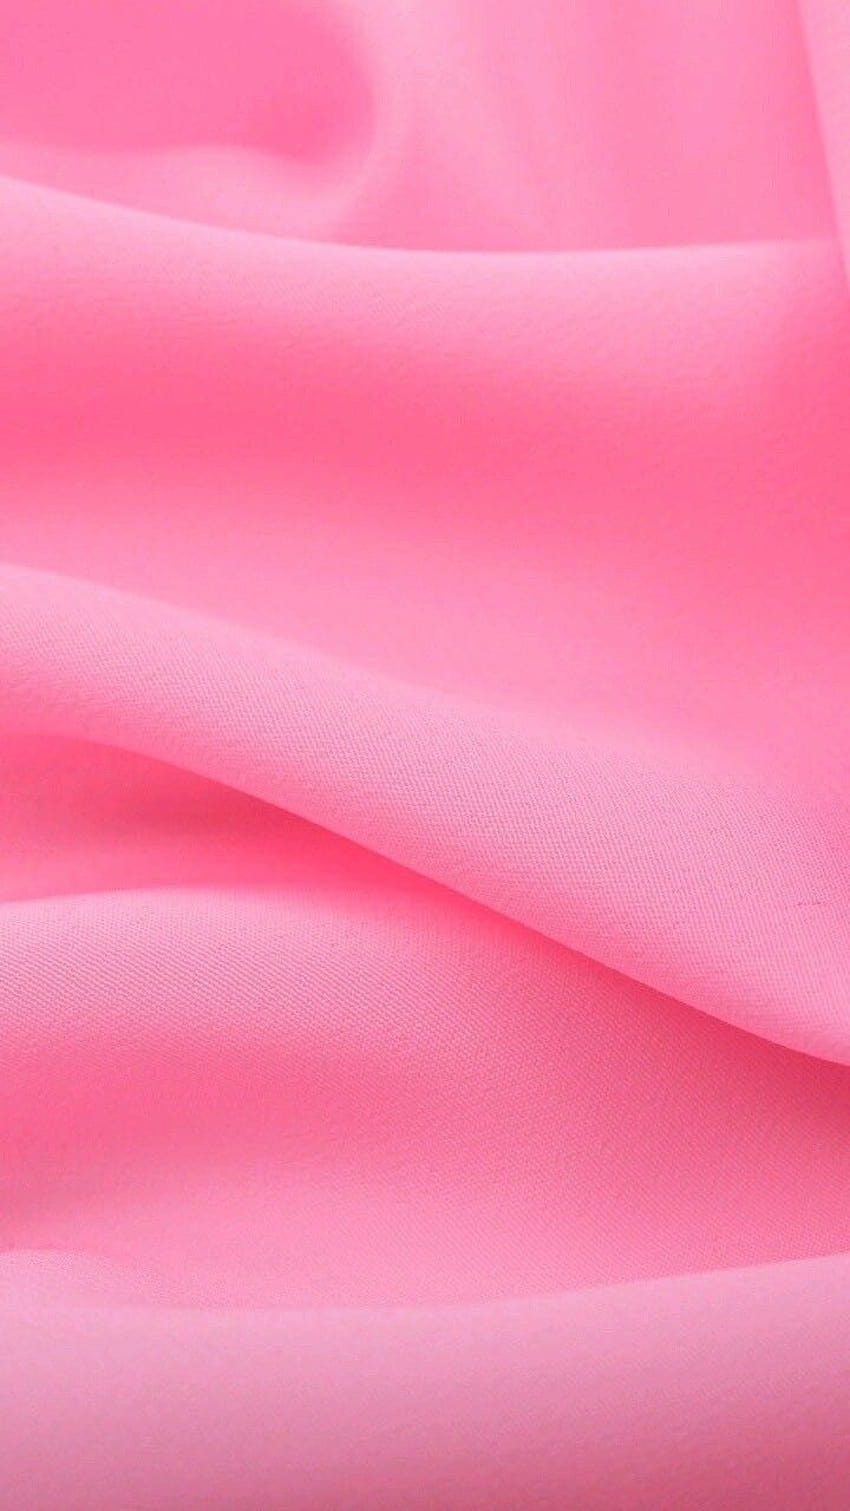 art, arrière-plan, beau, beauté, tissu, coloré, conception, tissu, iphone, modèle, rose, rose, satin, soie, style, textile, texture, nous l'aimons, fond rose, satin rose, couleur pastel, soie rose, iphone, pastel, soie rose Fond d'écran de téléphone HD